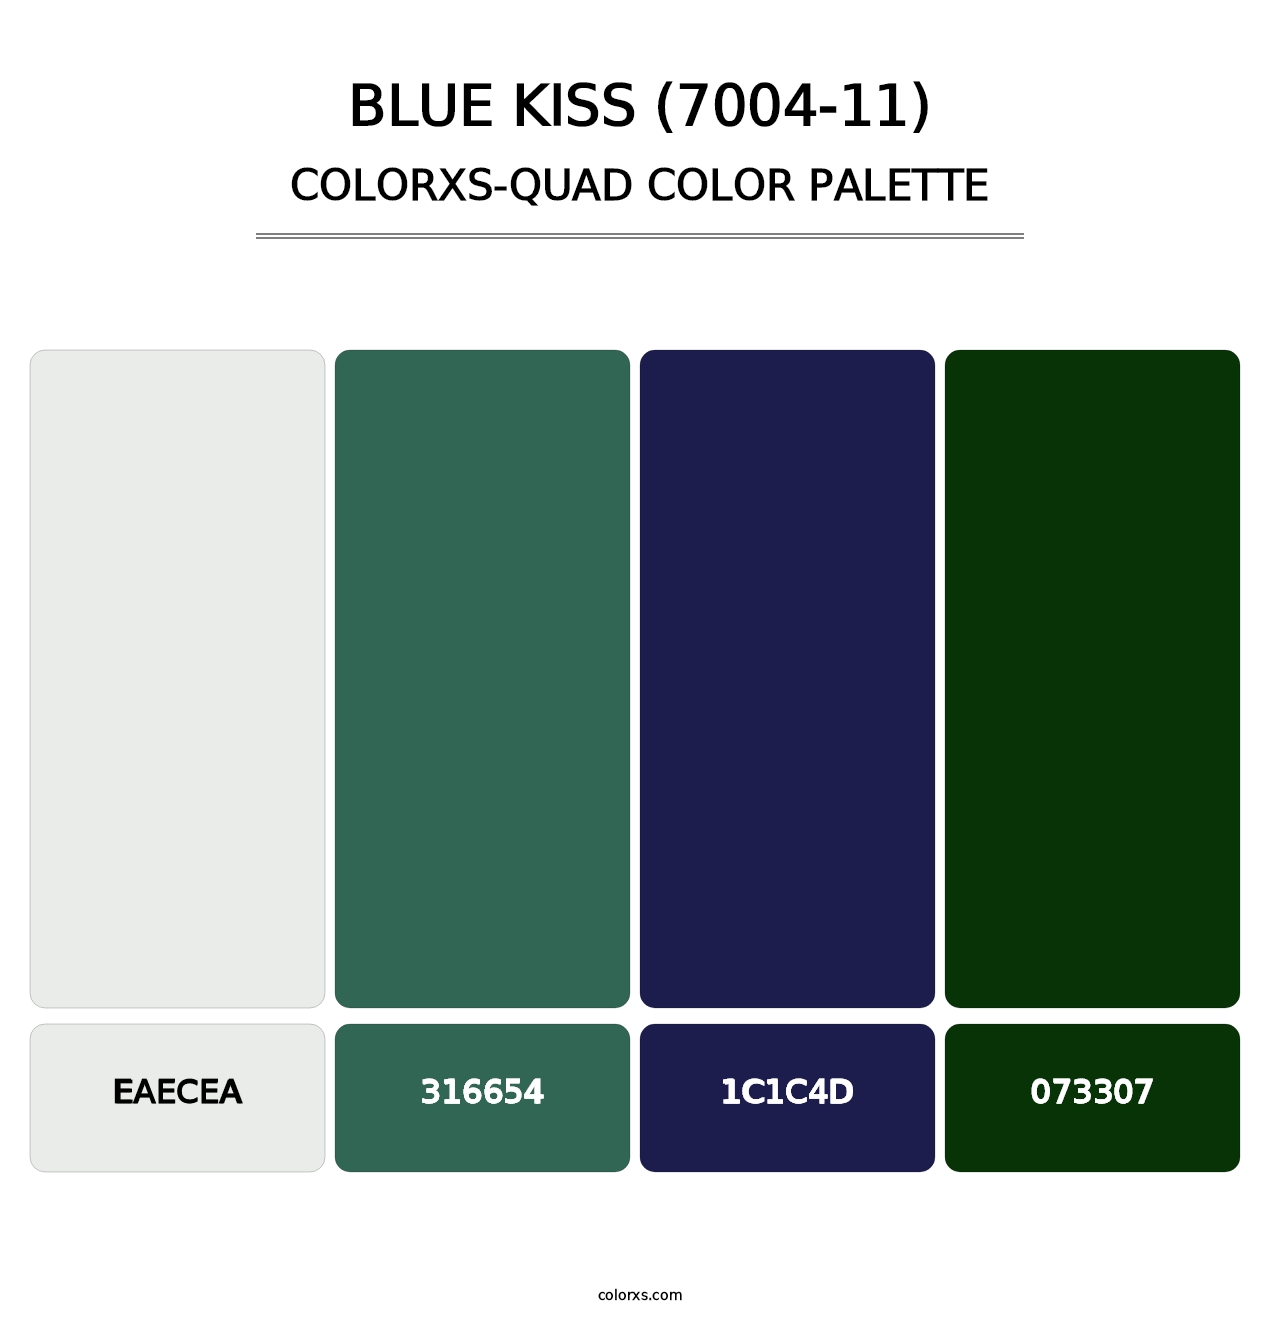 Blue Kiss (7004-11) - Colorxs Quad Palette